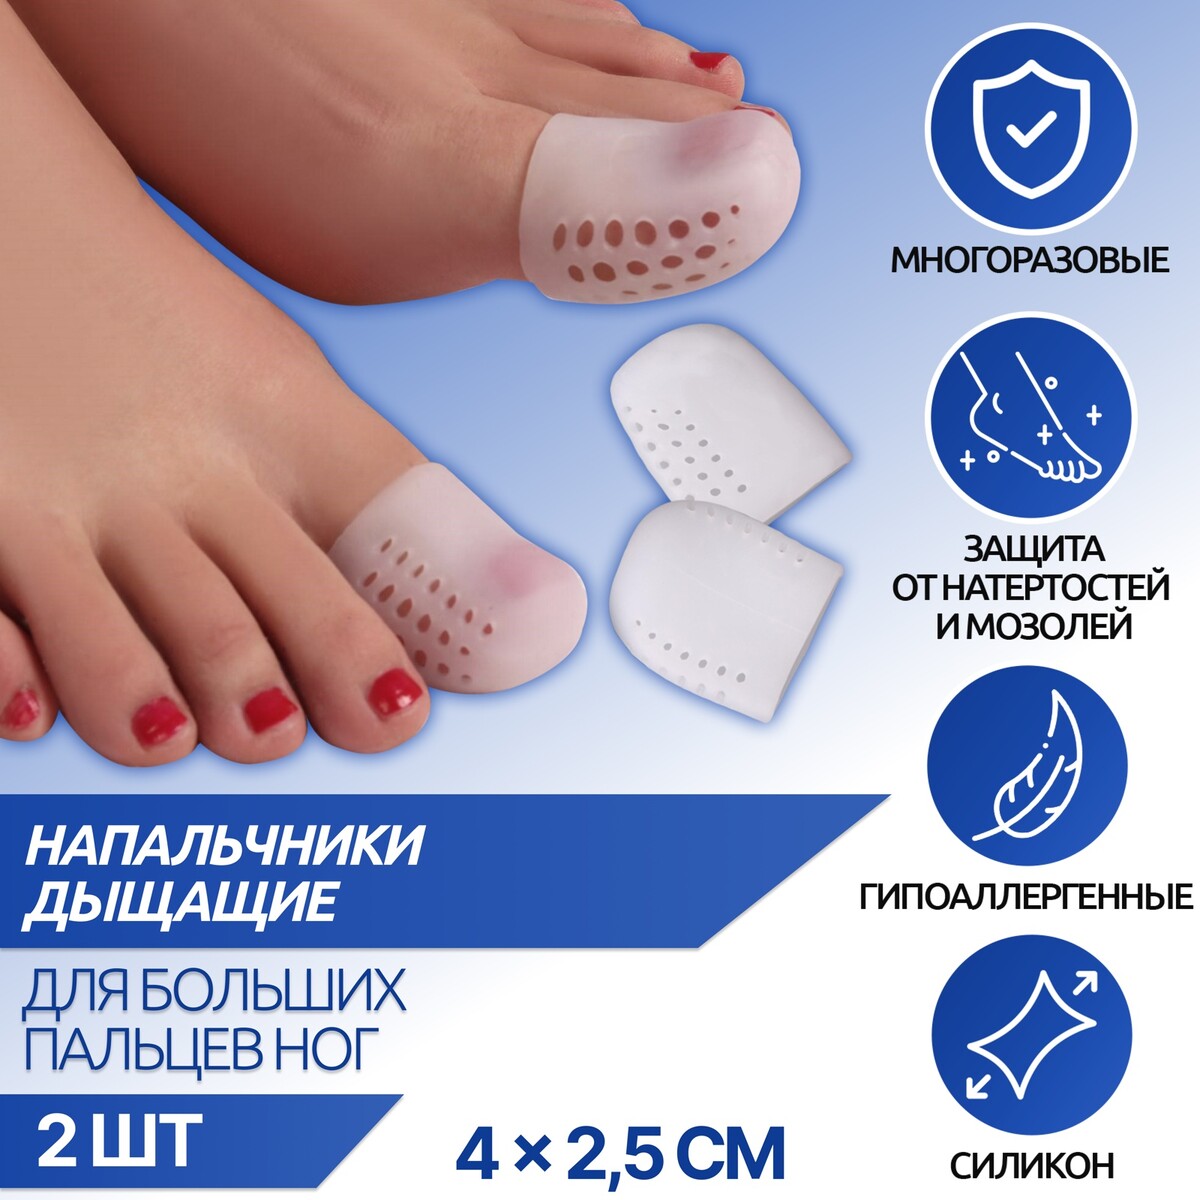 Напальчники для больших пальцев ног, дышащий, силиконовые, 4 × 2,5 см, пара, цвет белый напальчники для больших пальцев ног дышащий силиконовые 4 × 2 5 см пара белый